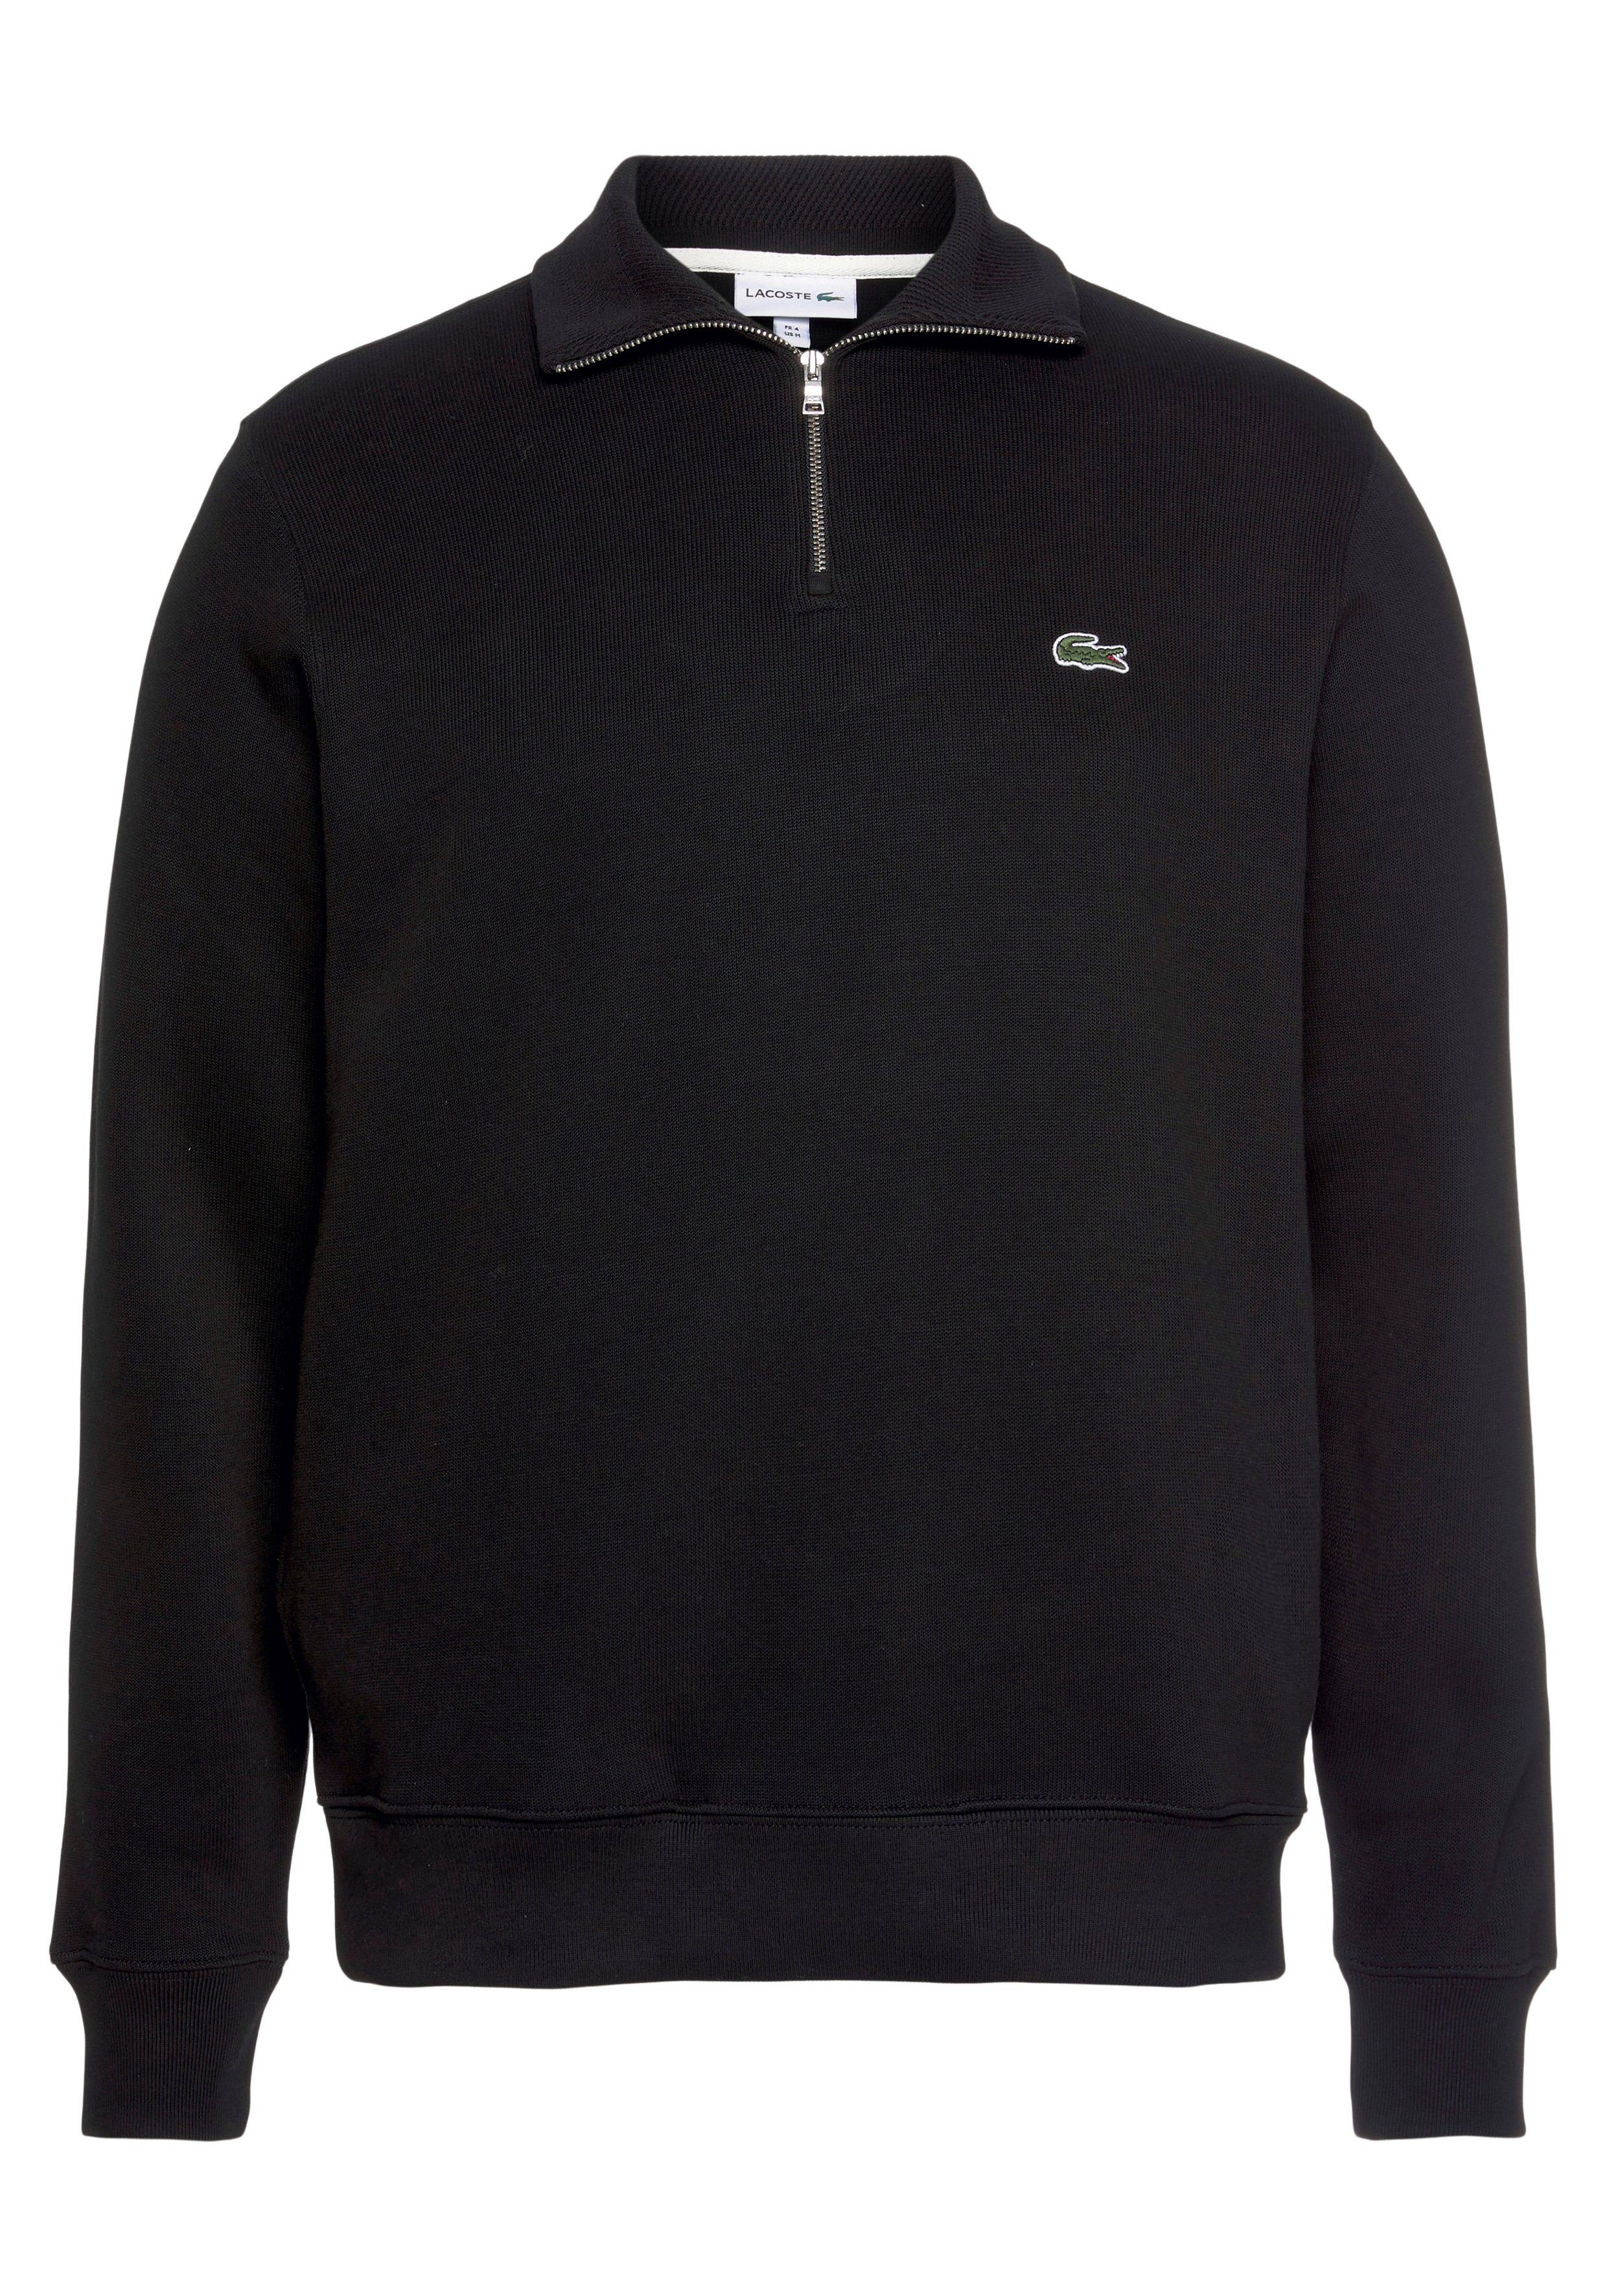 Sweattroyer black mit Lacoste Stehkragen Sweatshirt